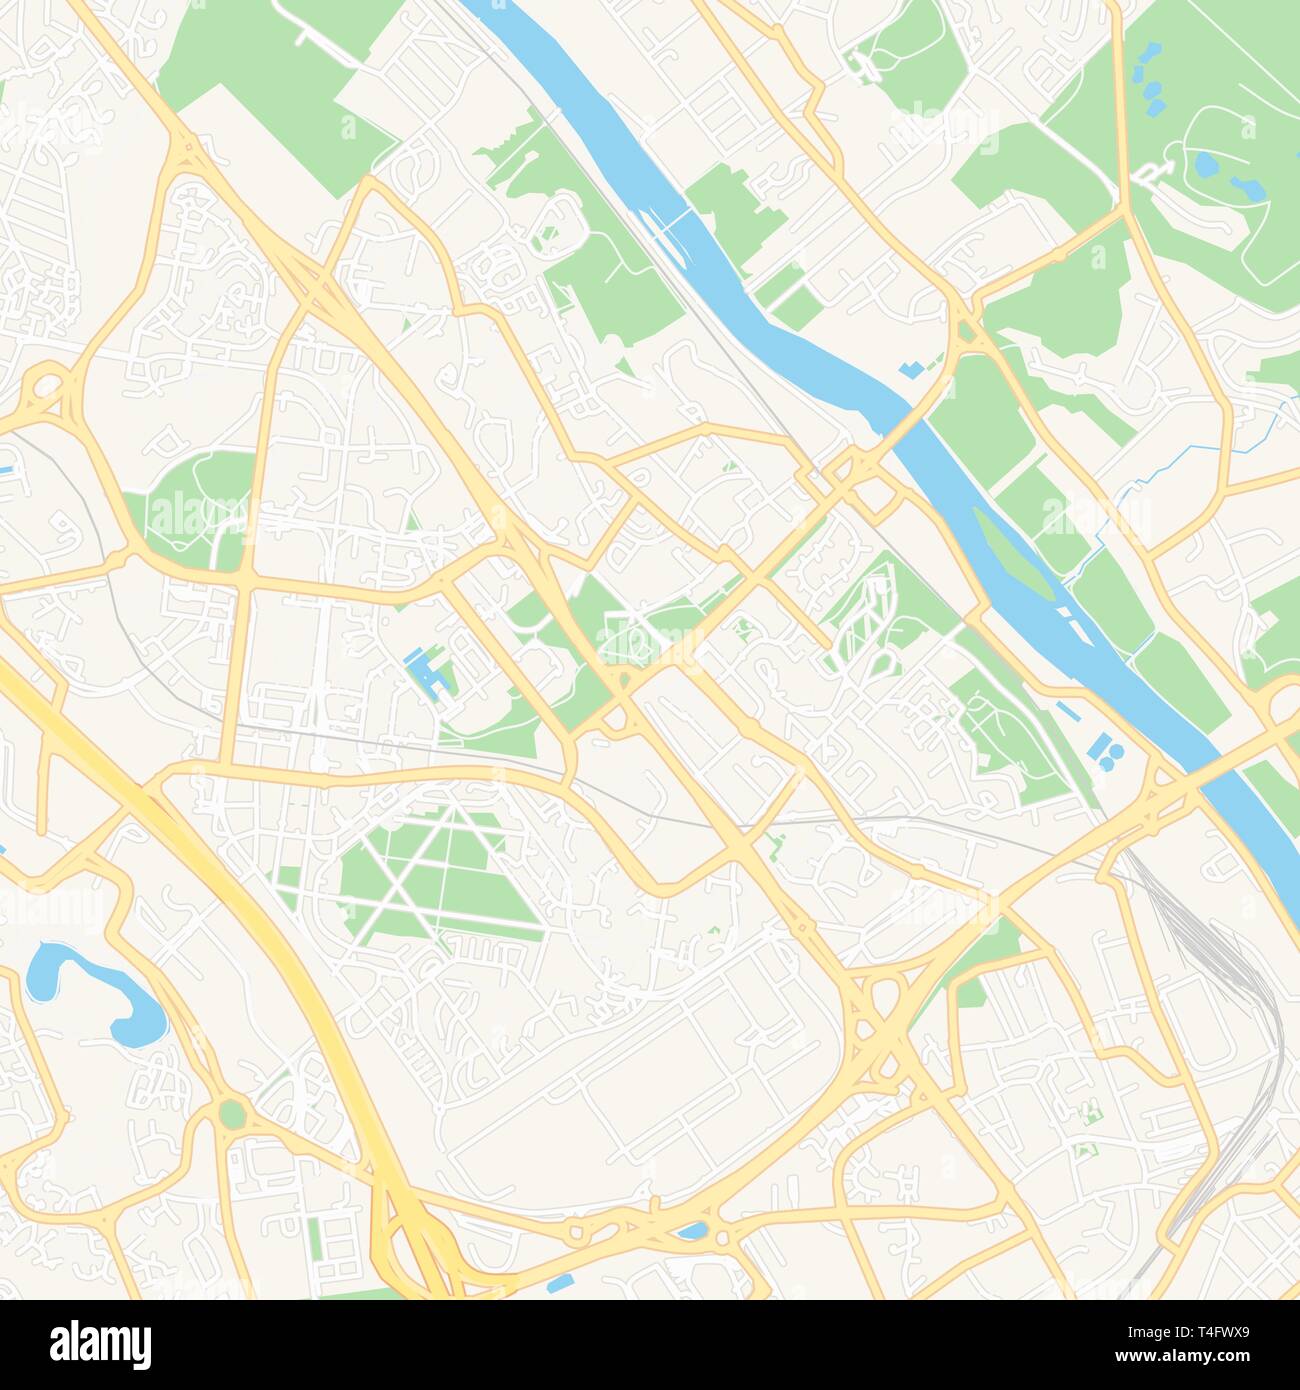 Druckbare Karte von Evry, Frankreich mit Haupt- und Nebenstraßen und größere Bahnen. Diese Karte ist sorgfältig für das Routing und die Platzierung von einzelnen dat konzipiert Stock Vektor